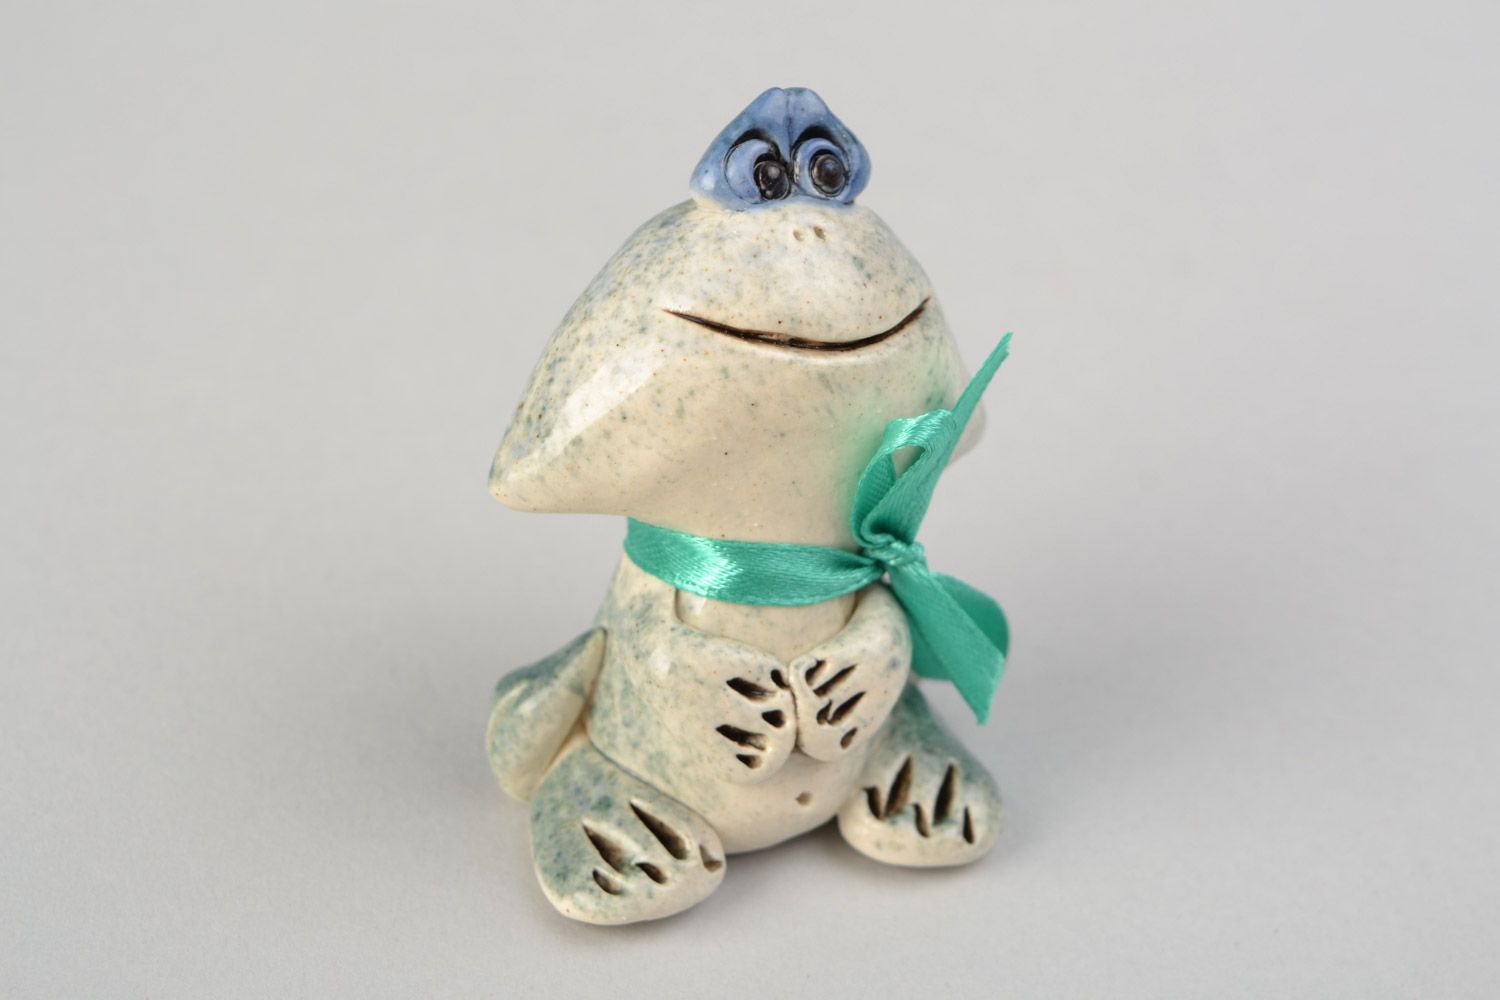 Авторская расписанная глазурью глиняная фигурка лягушки-мальчика ручной работы фото 1